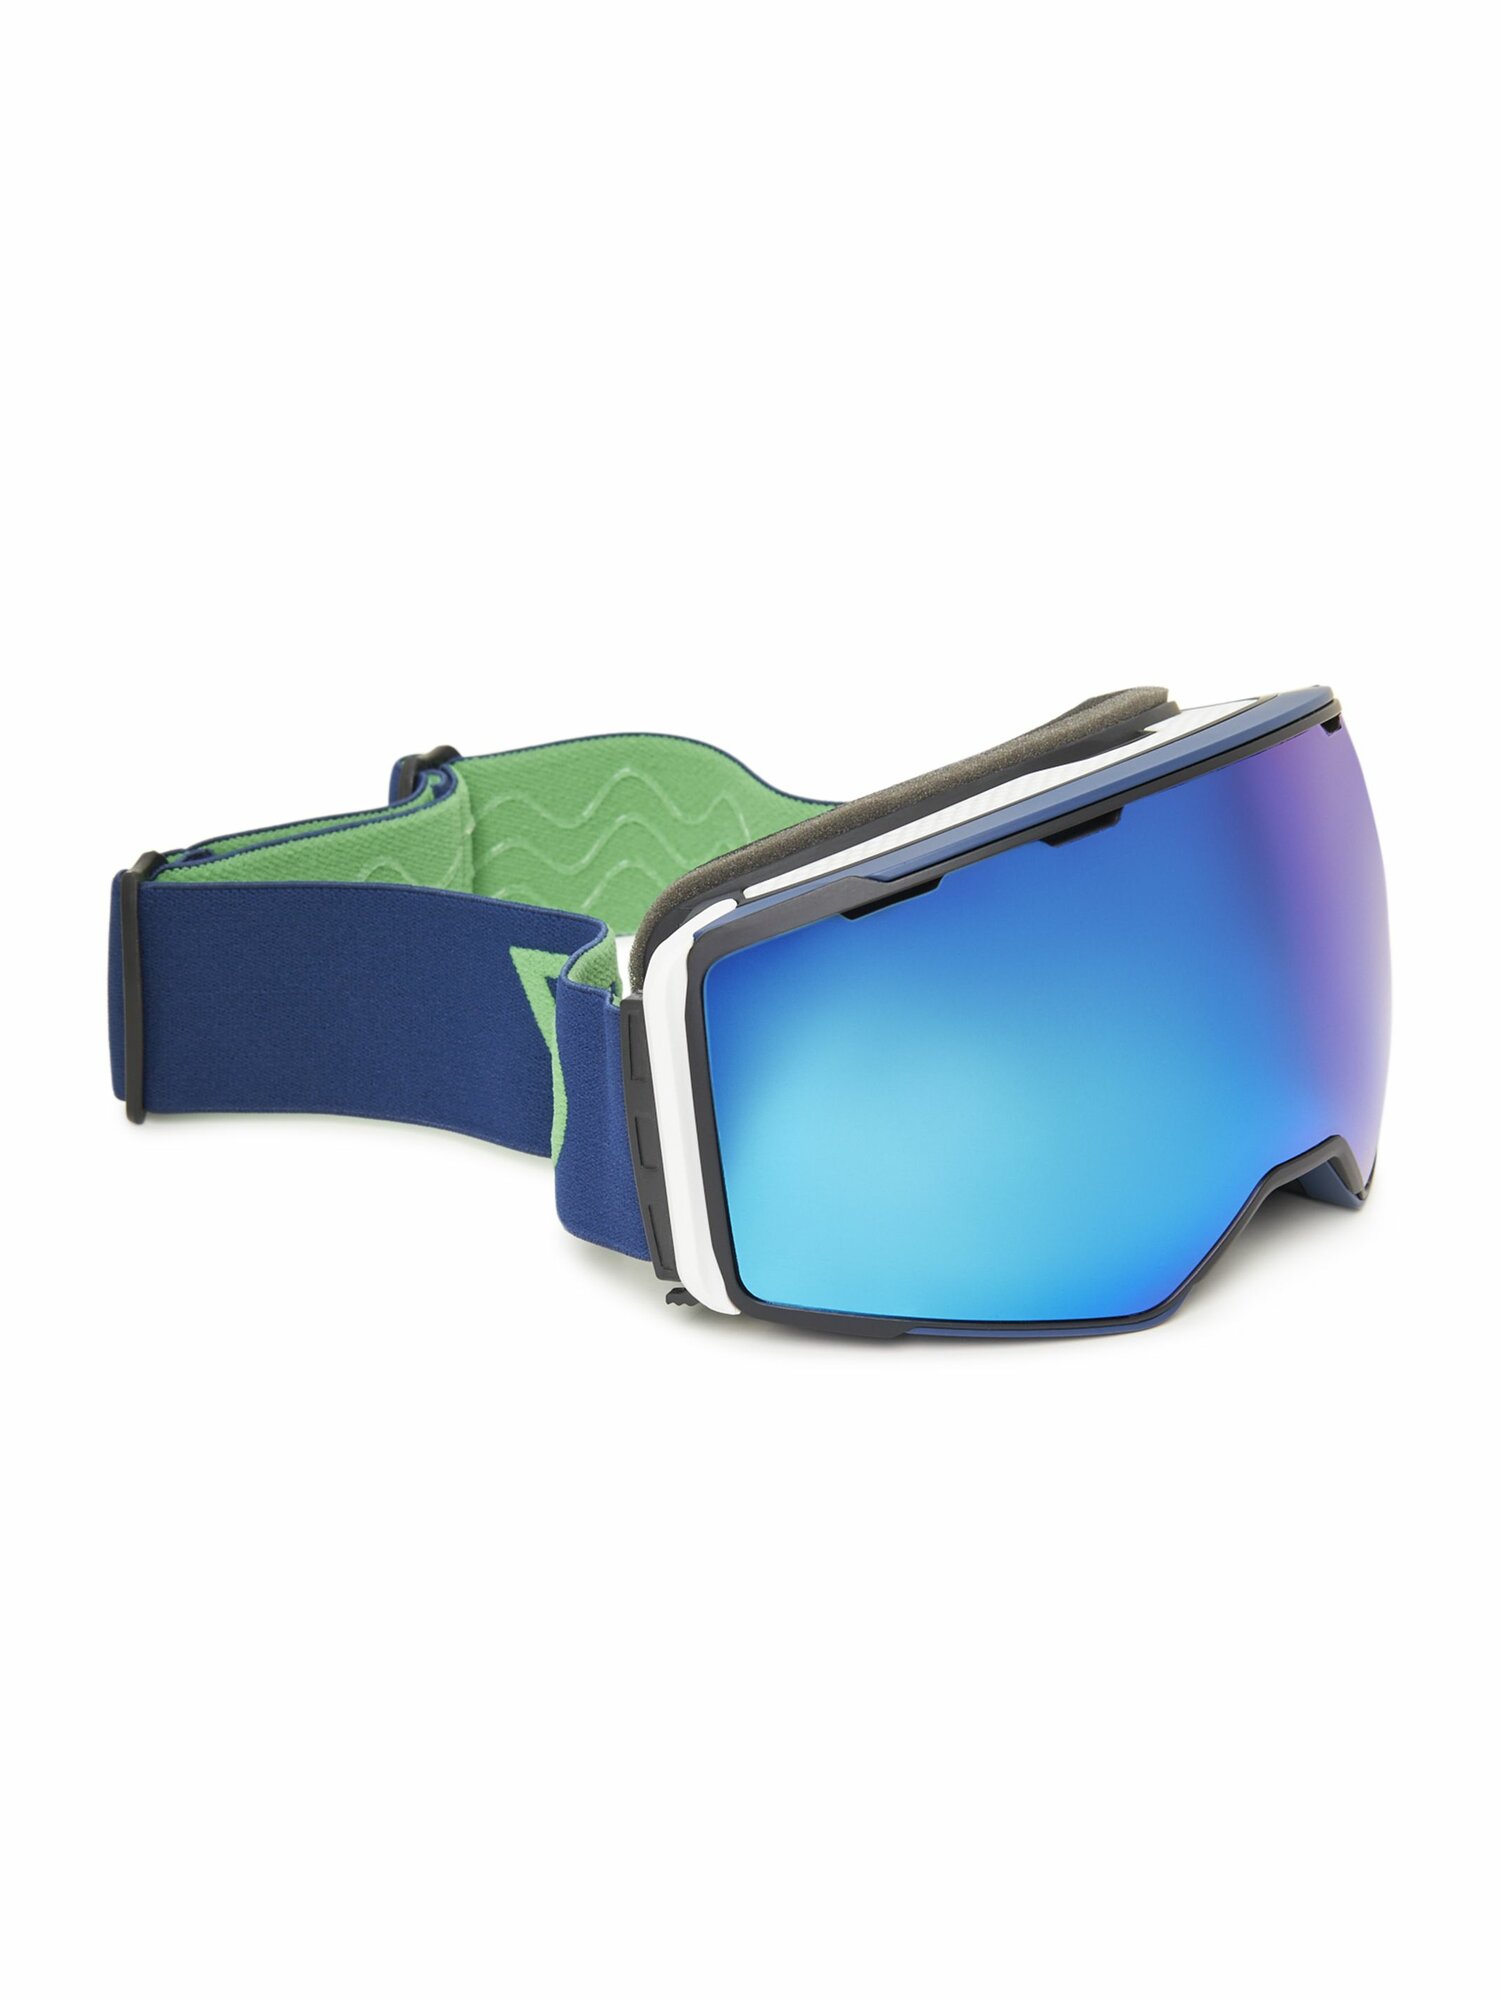 Маска горнолыжная, защитная, очки горнолыжные, защитные WinDay, голубой